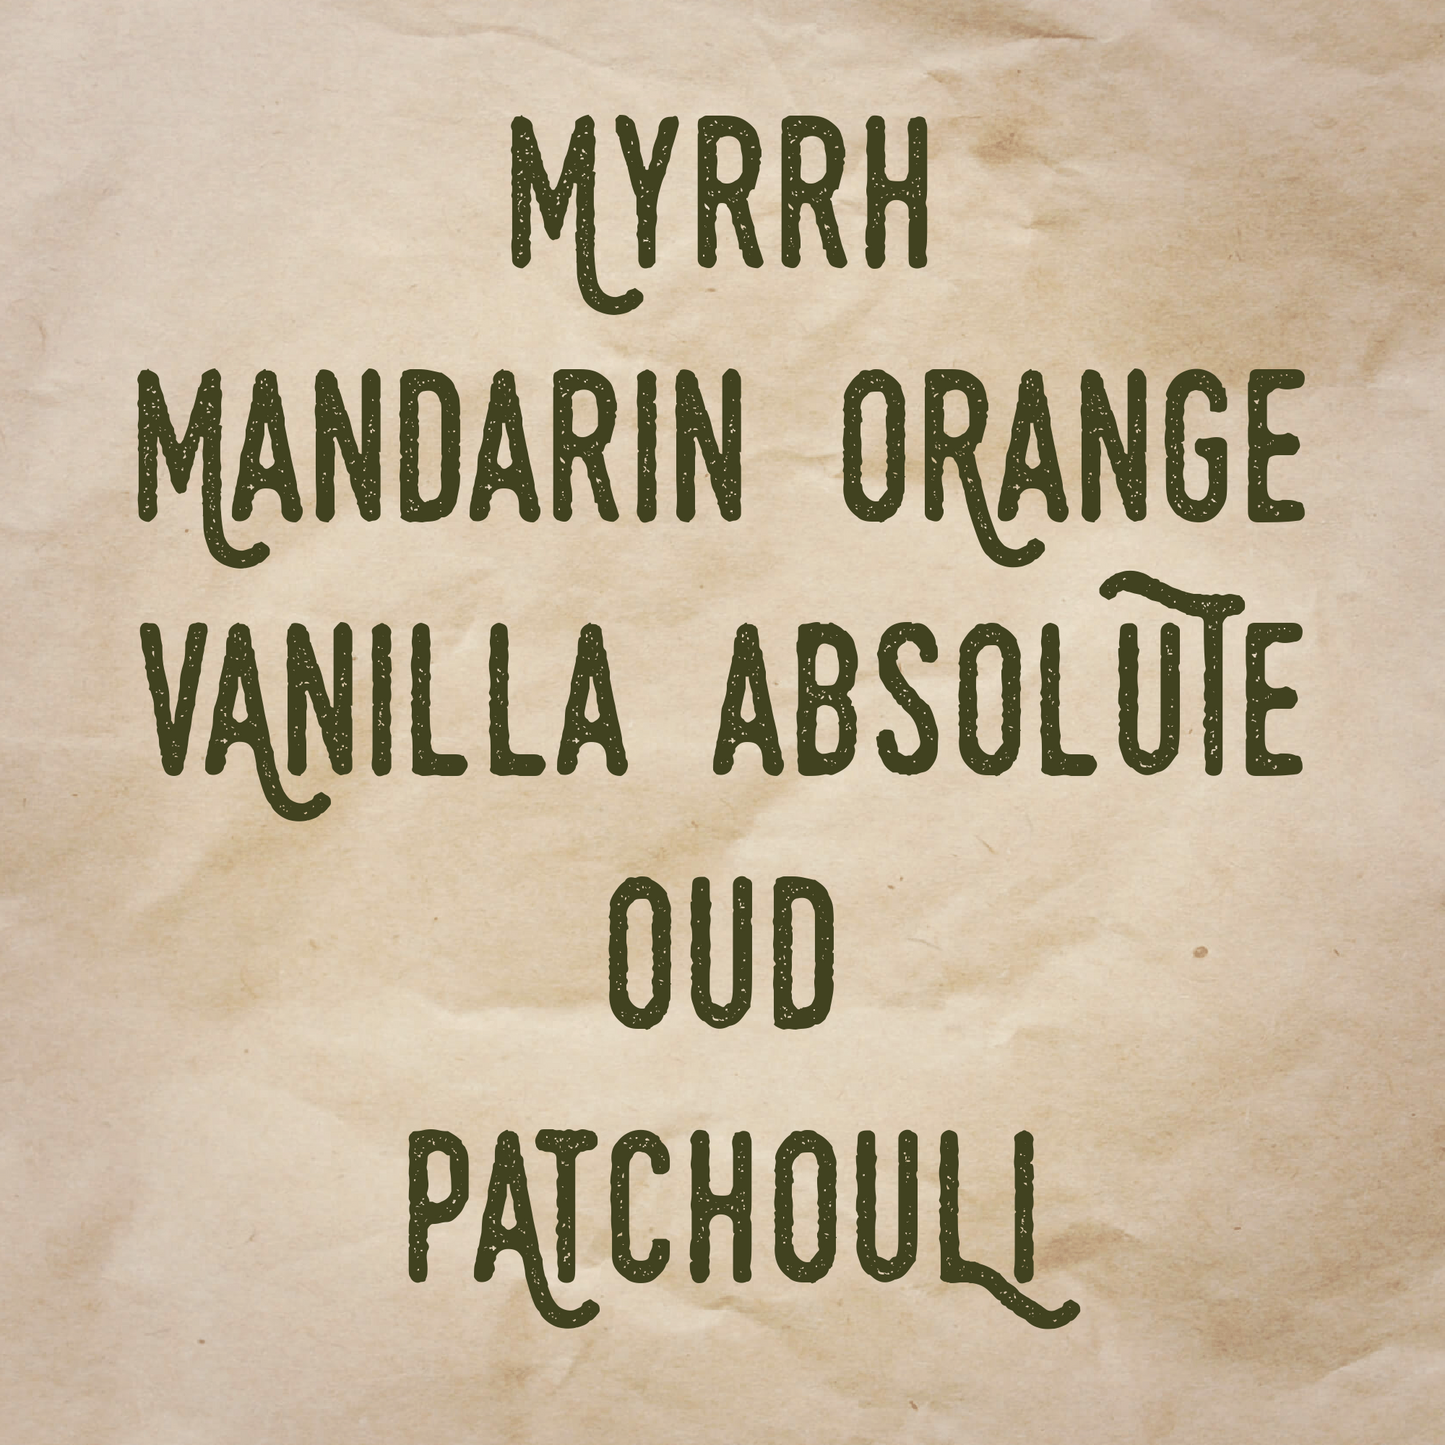 MyrrhDer scent notes: Myrrh, mandarin orange, vanilla absolute, oud, and patchouli.